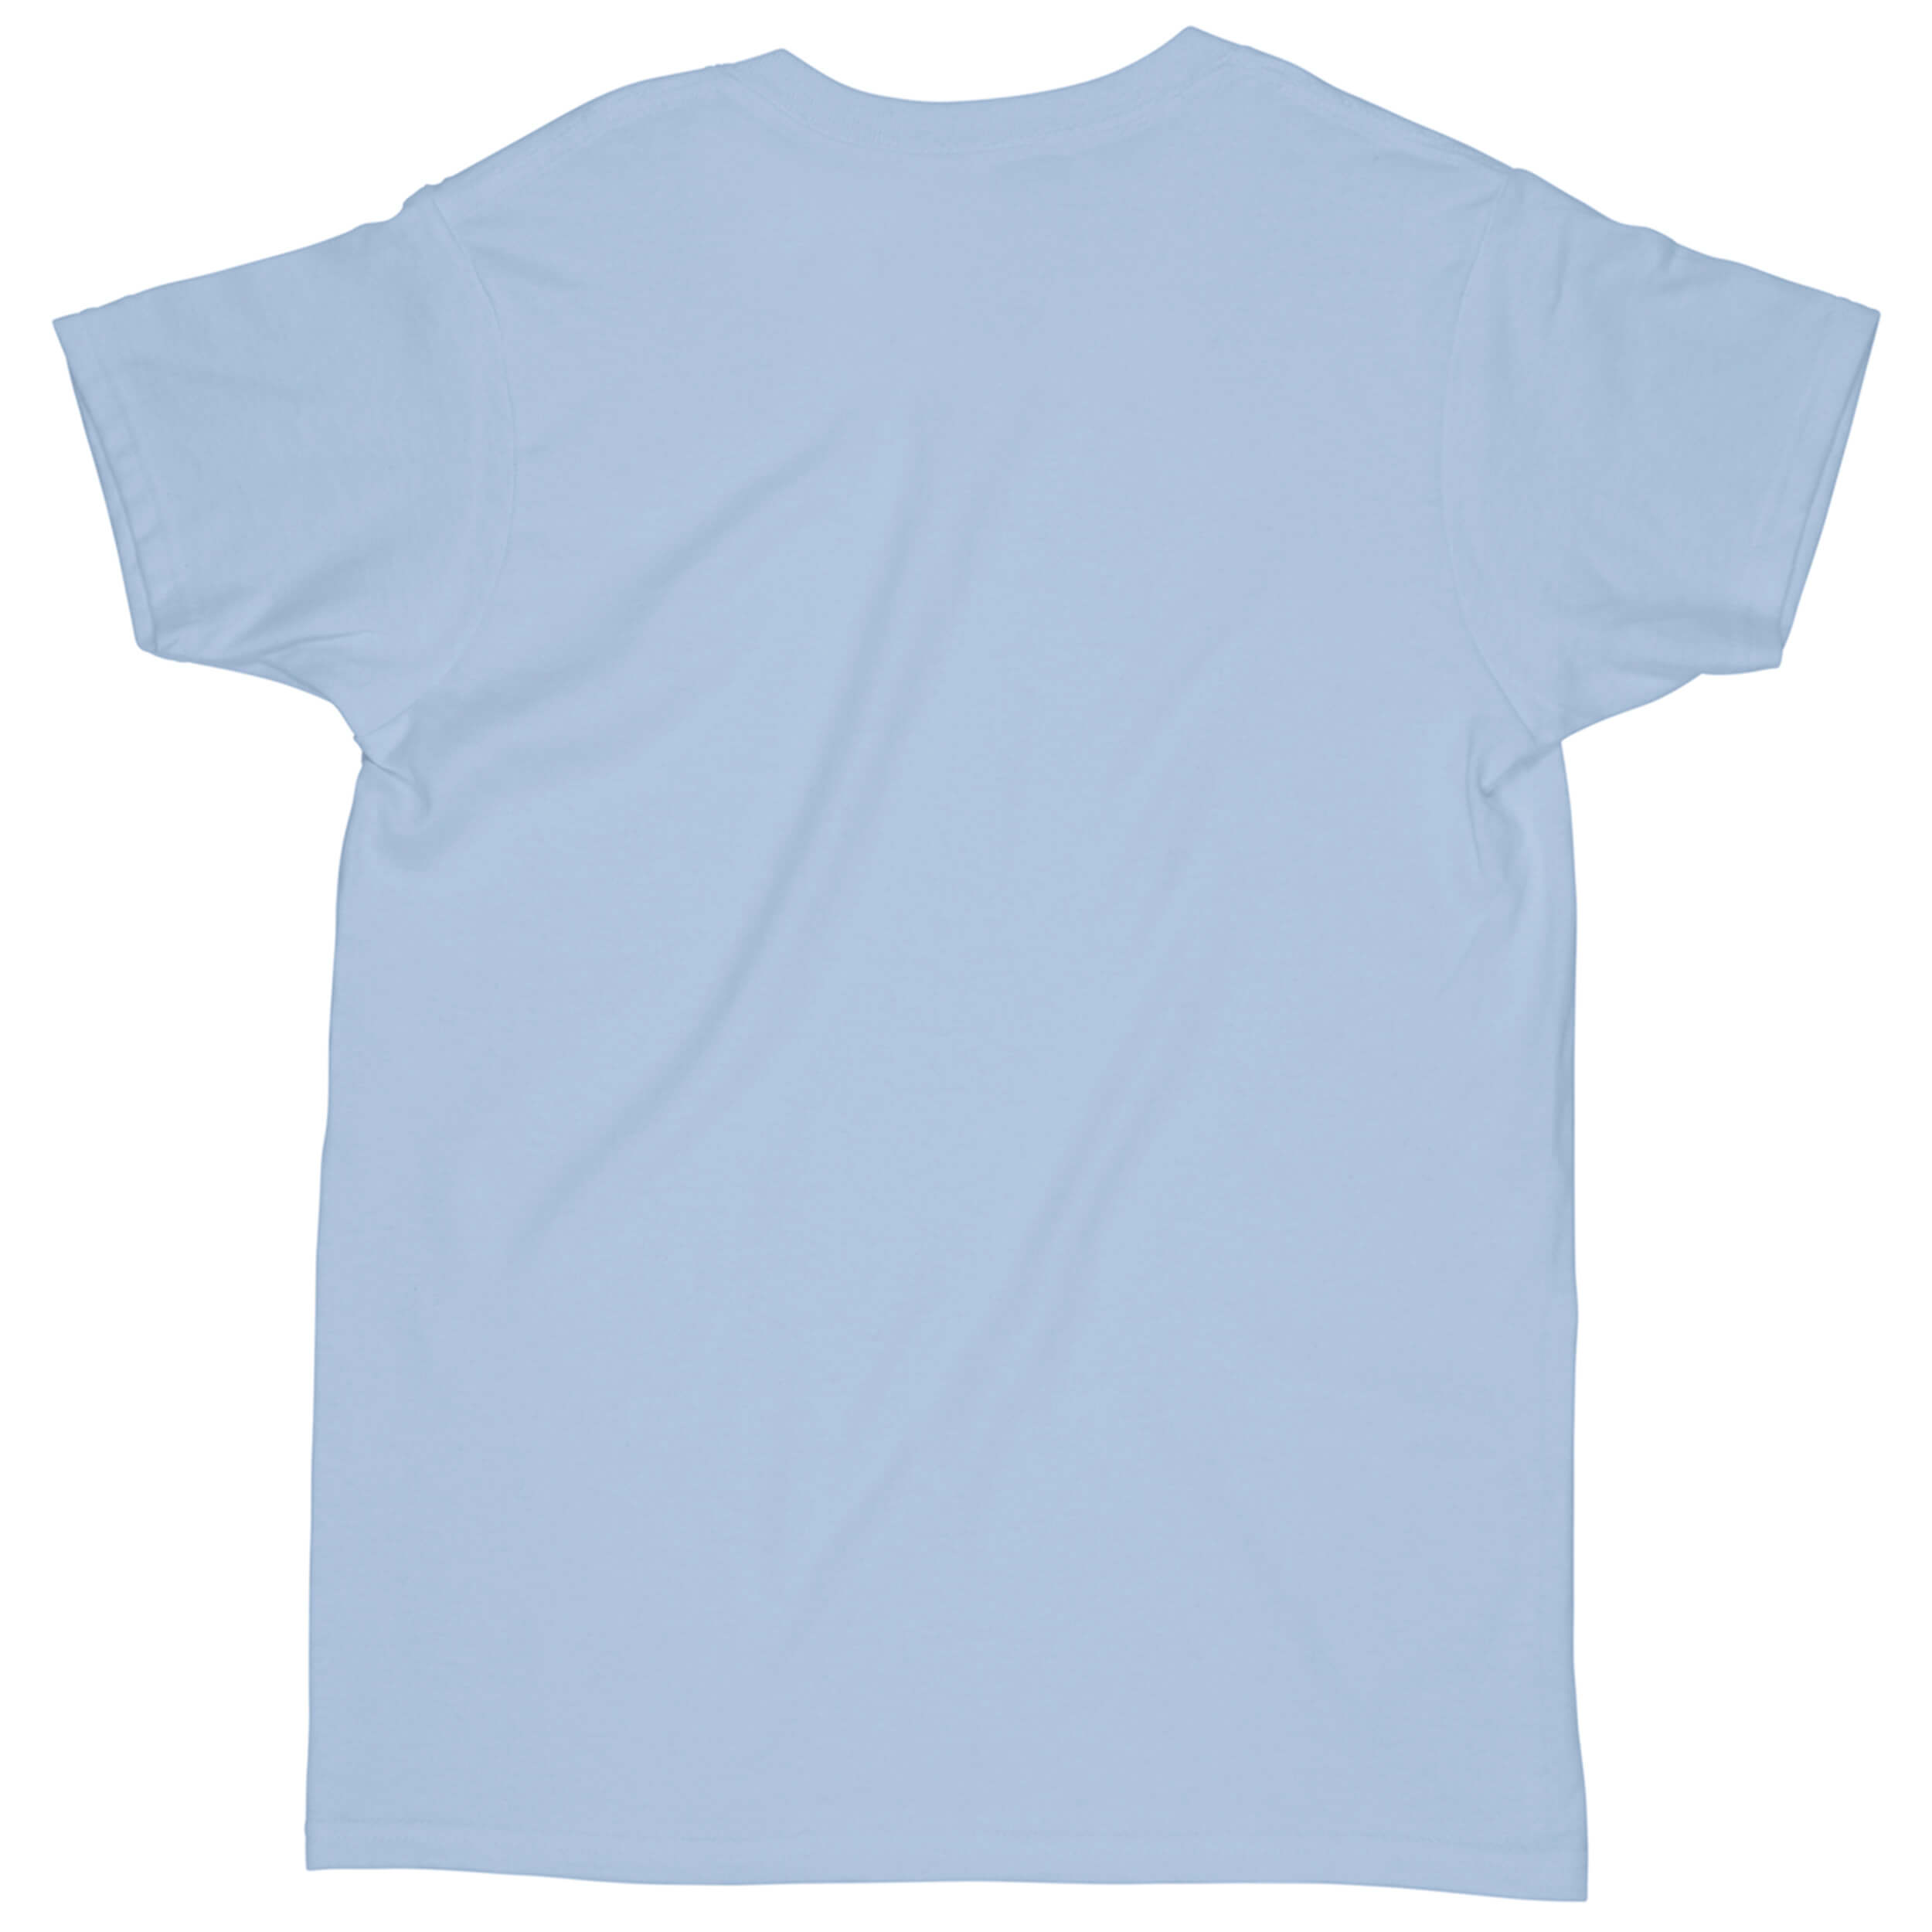 light current blue shirt